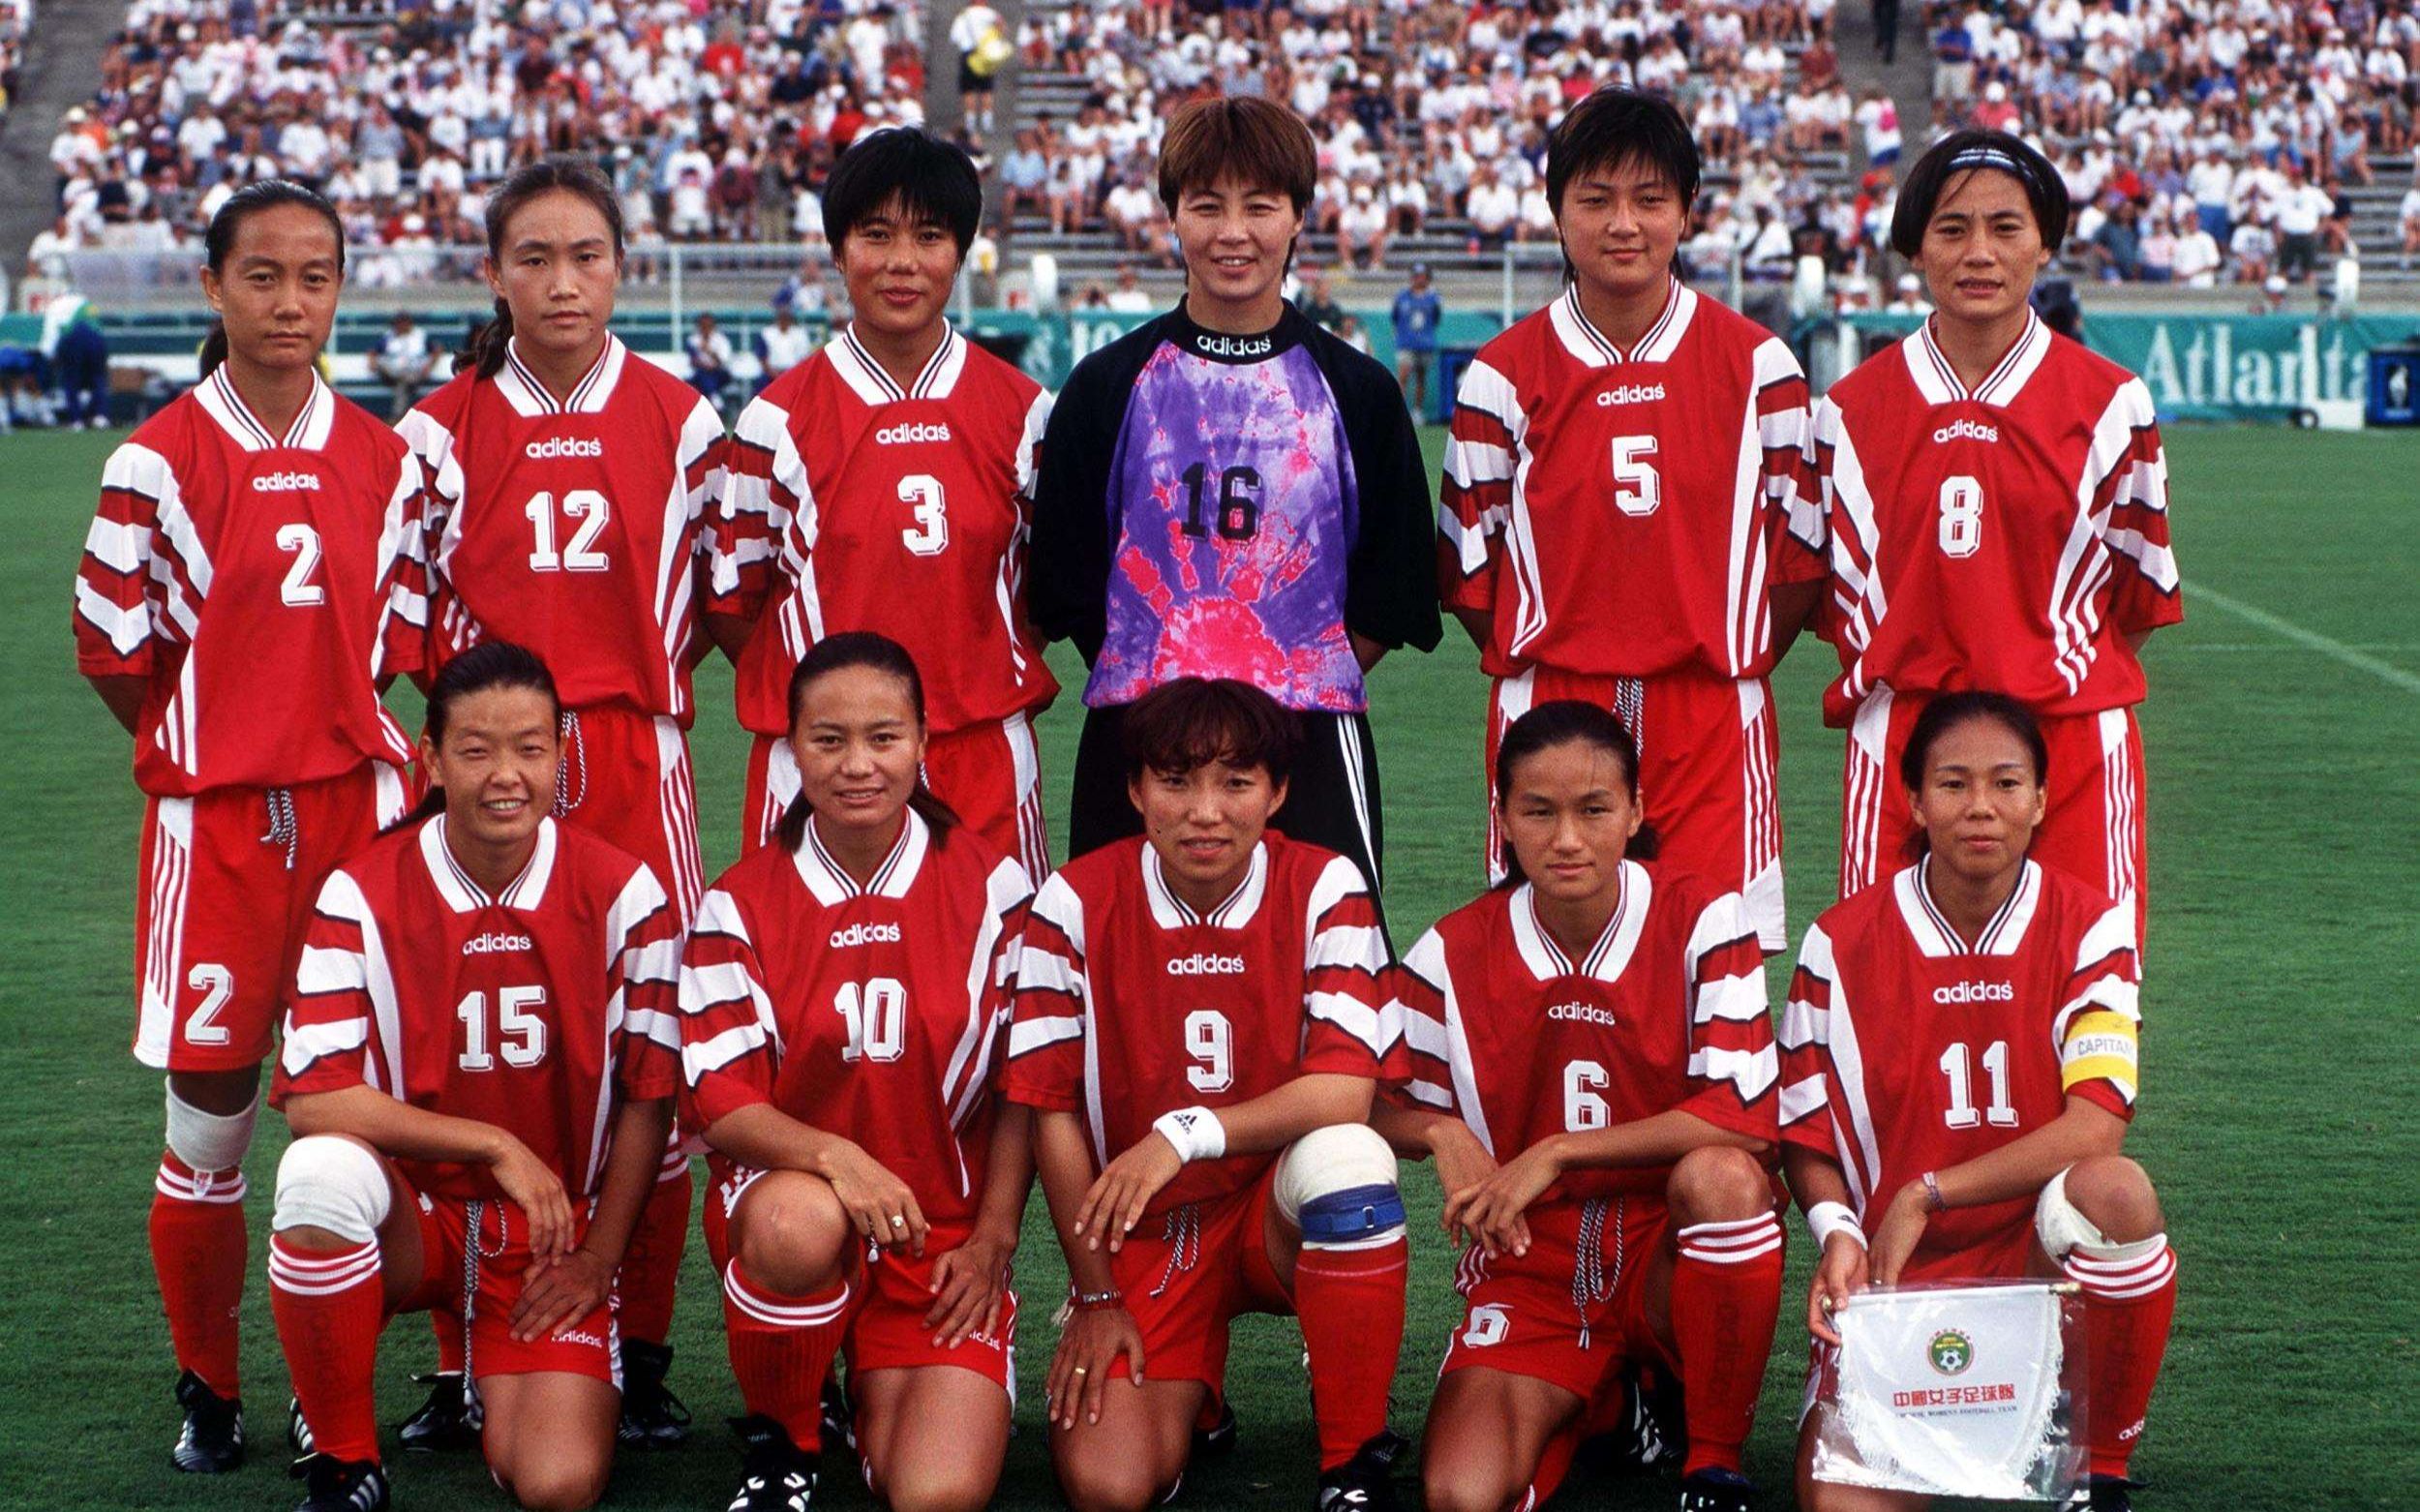 99年女足世界杯图片